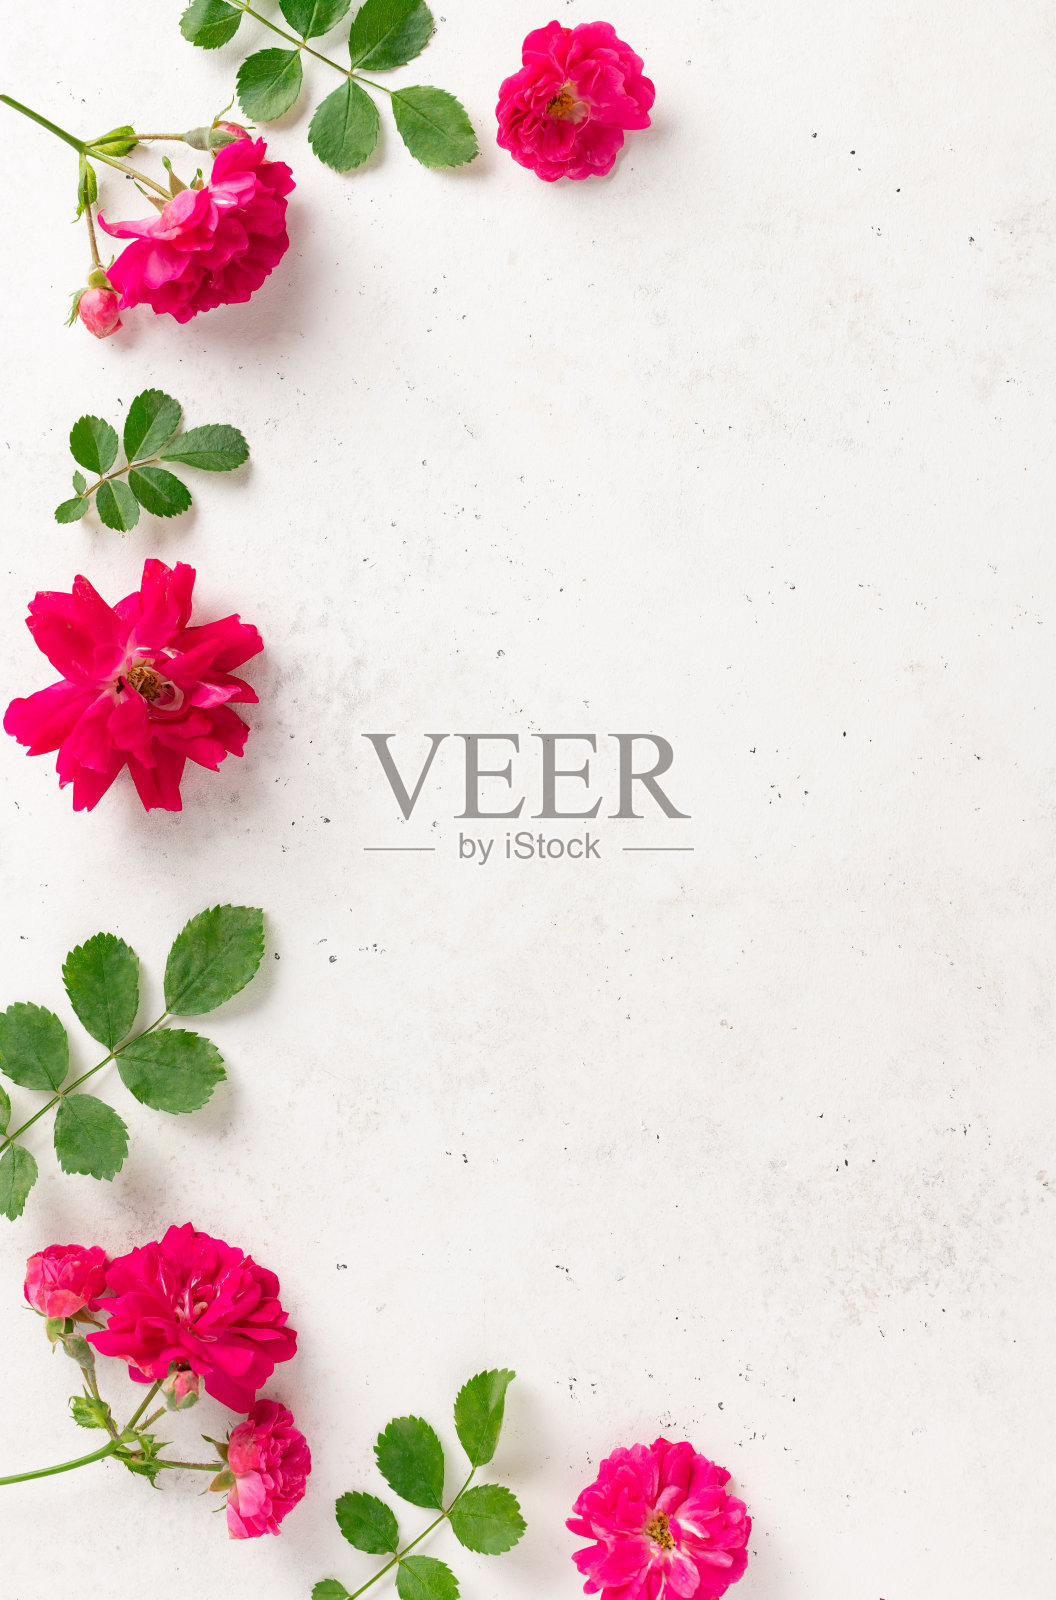 鲜艳的粉红色玫瑰与绿色的叶子在白色的混凝土背景镶边。空白贺卡，爱的概念。美容和水疗概念。照片摄影图片